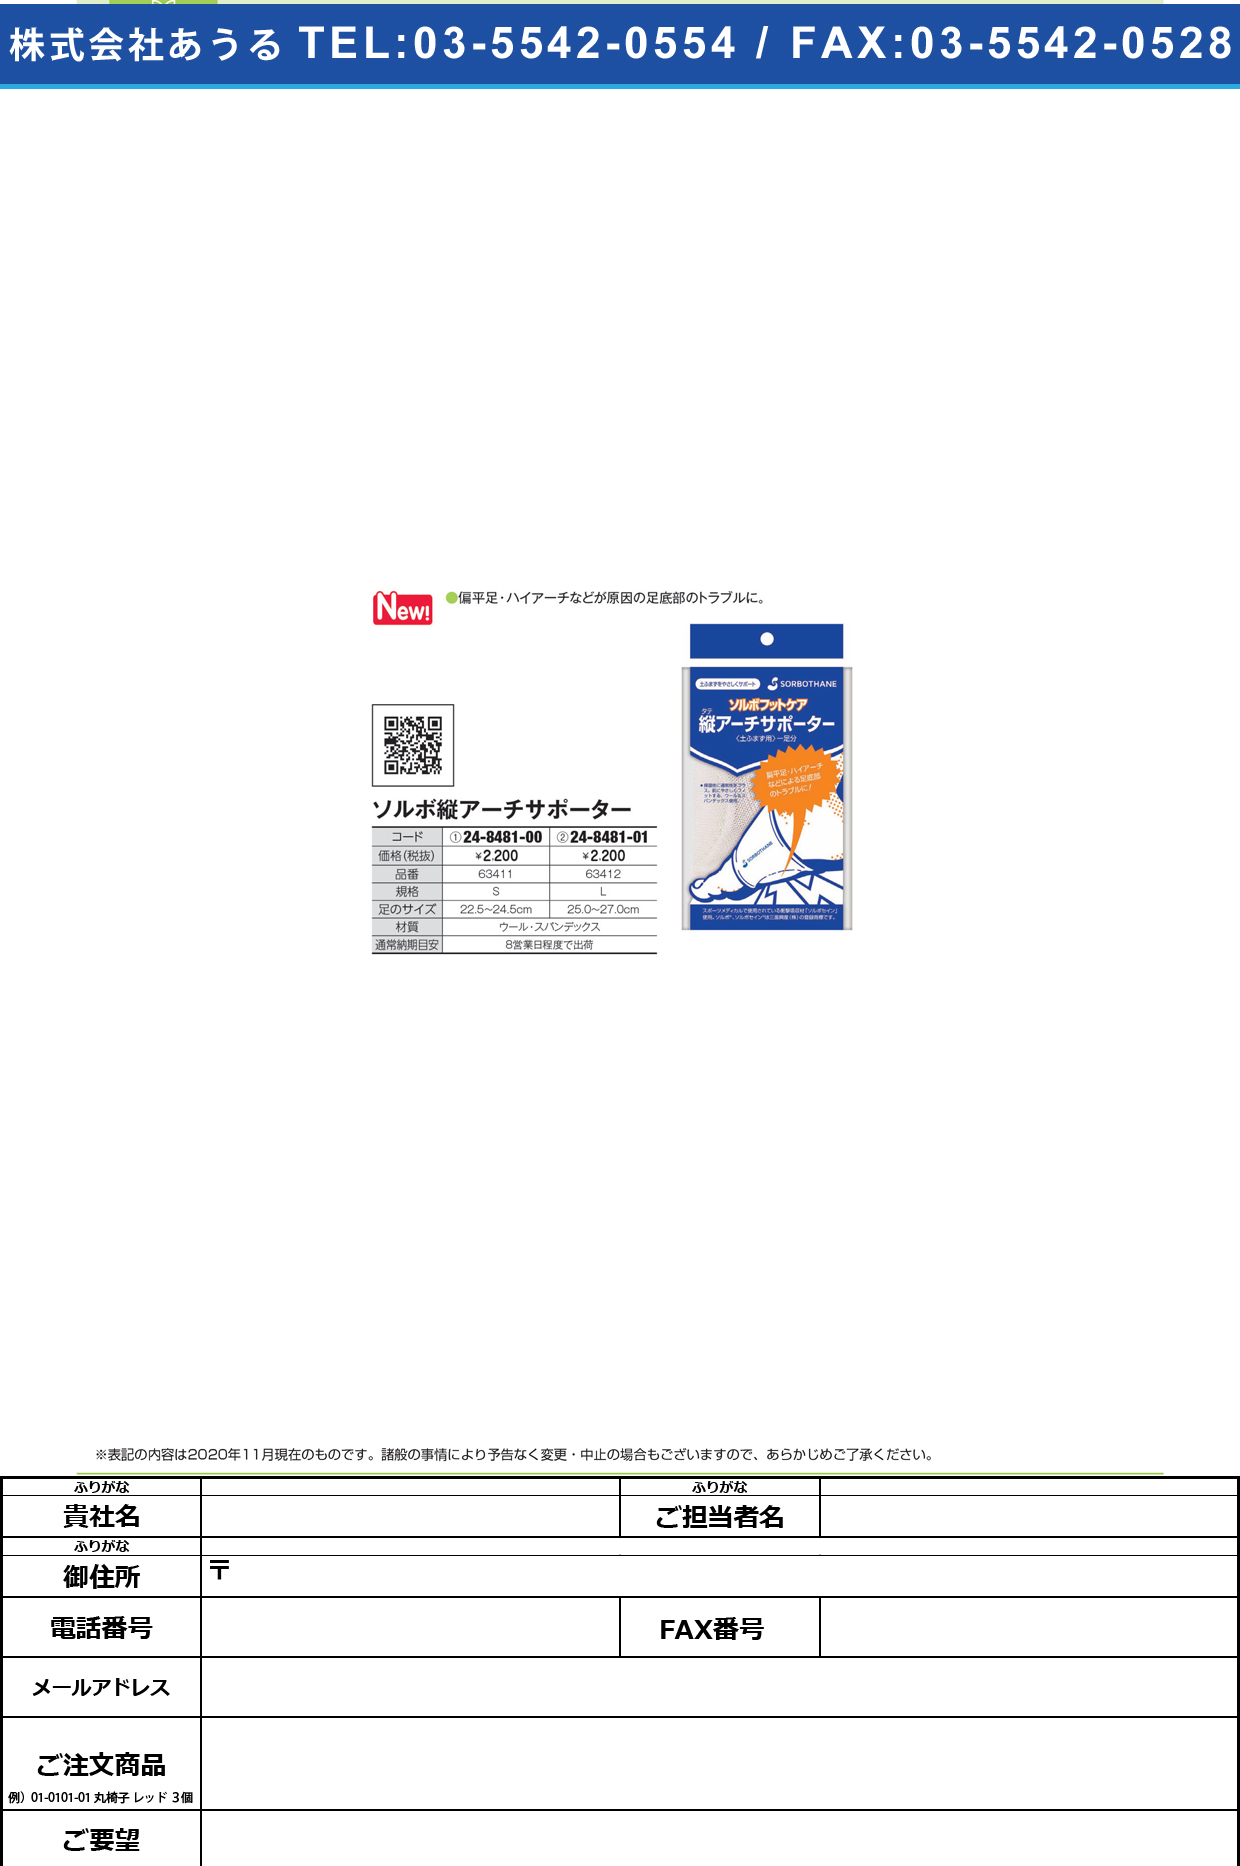 ソルボタテアーチサポーター 63412(L)1ソクイリ63412(L)1ｿｸｲﾘ(24-8481-01)【カナケン】(販売単位:1)